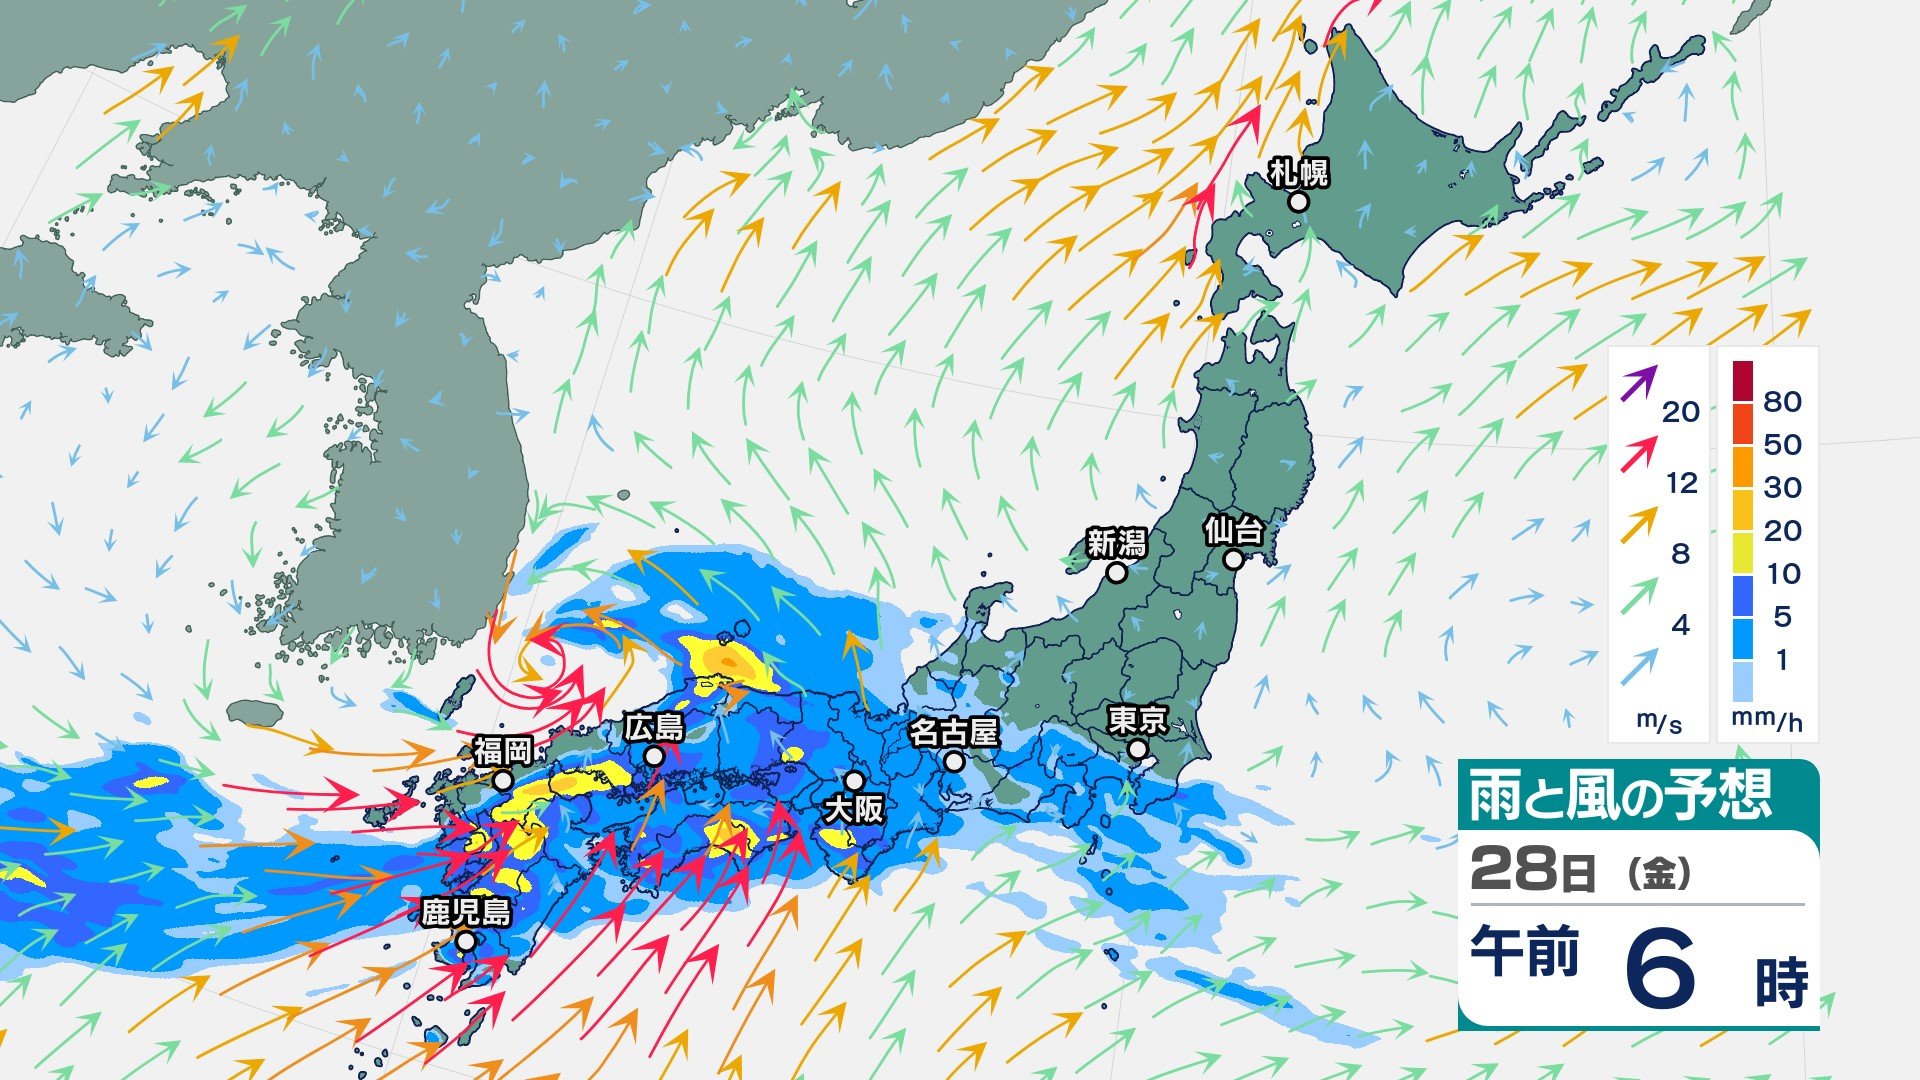 29日にかけて大雨に警戒　29日までに九州北部で400ミリ 四国で300ミリなど広い範囲で激しい雨の恐れ　その後も北日本で大雨か【今後の雨・風のシミュレーション】